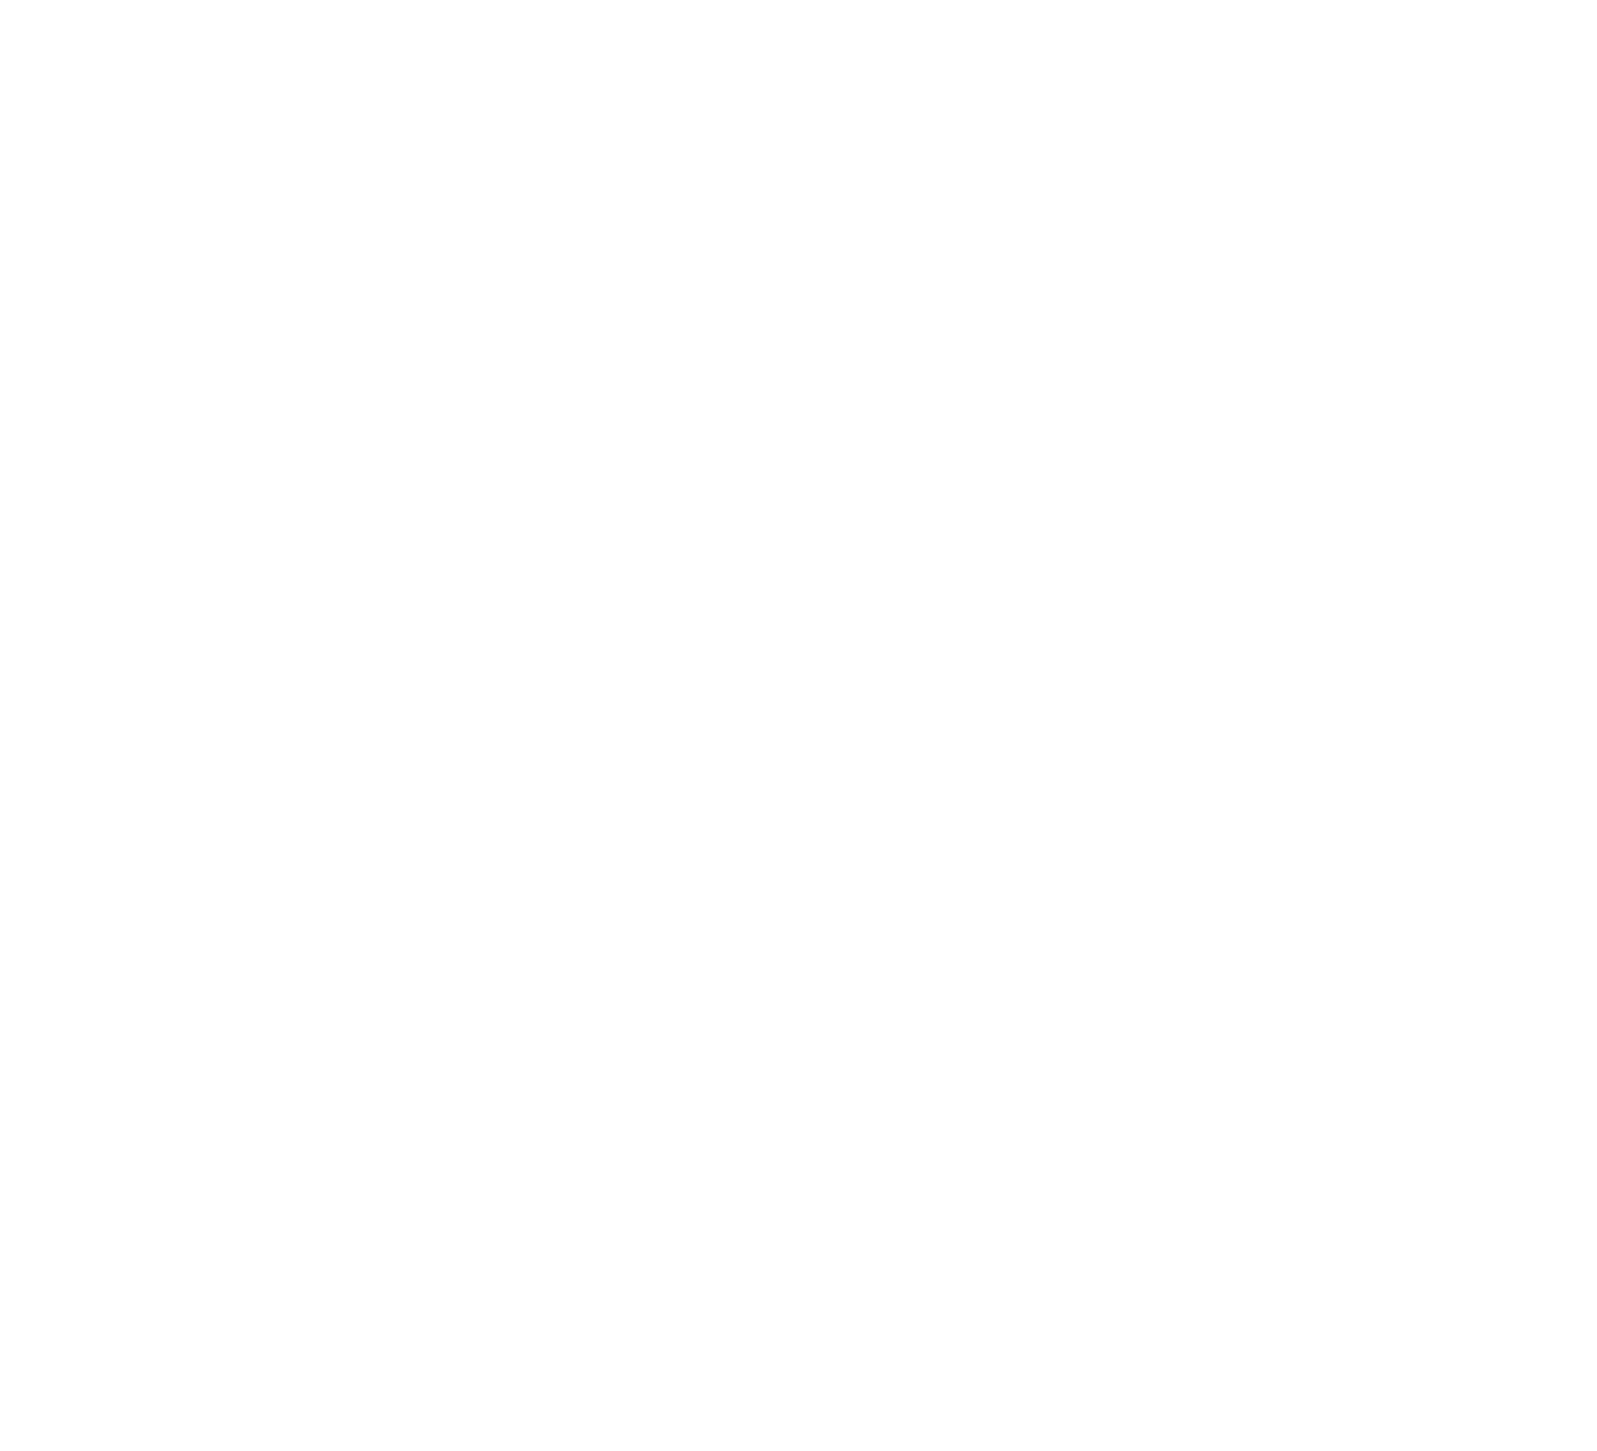 Becle logo large for dark backgrounds (transparent PNG)